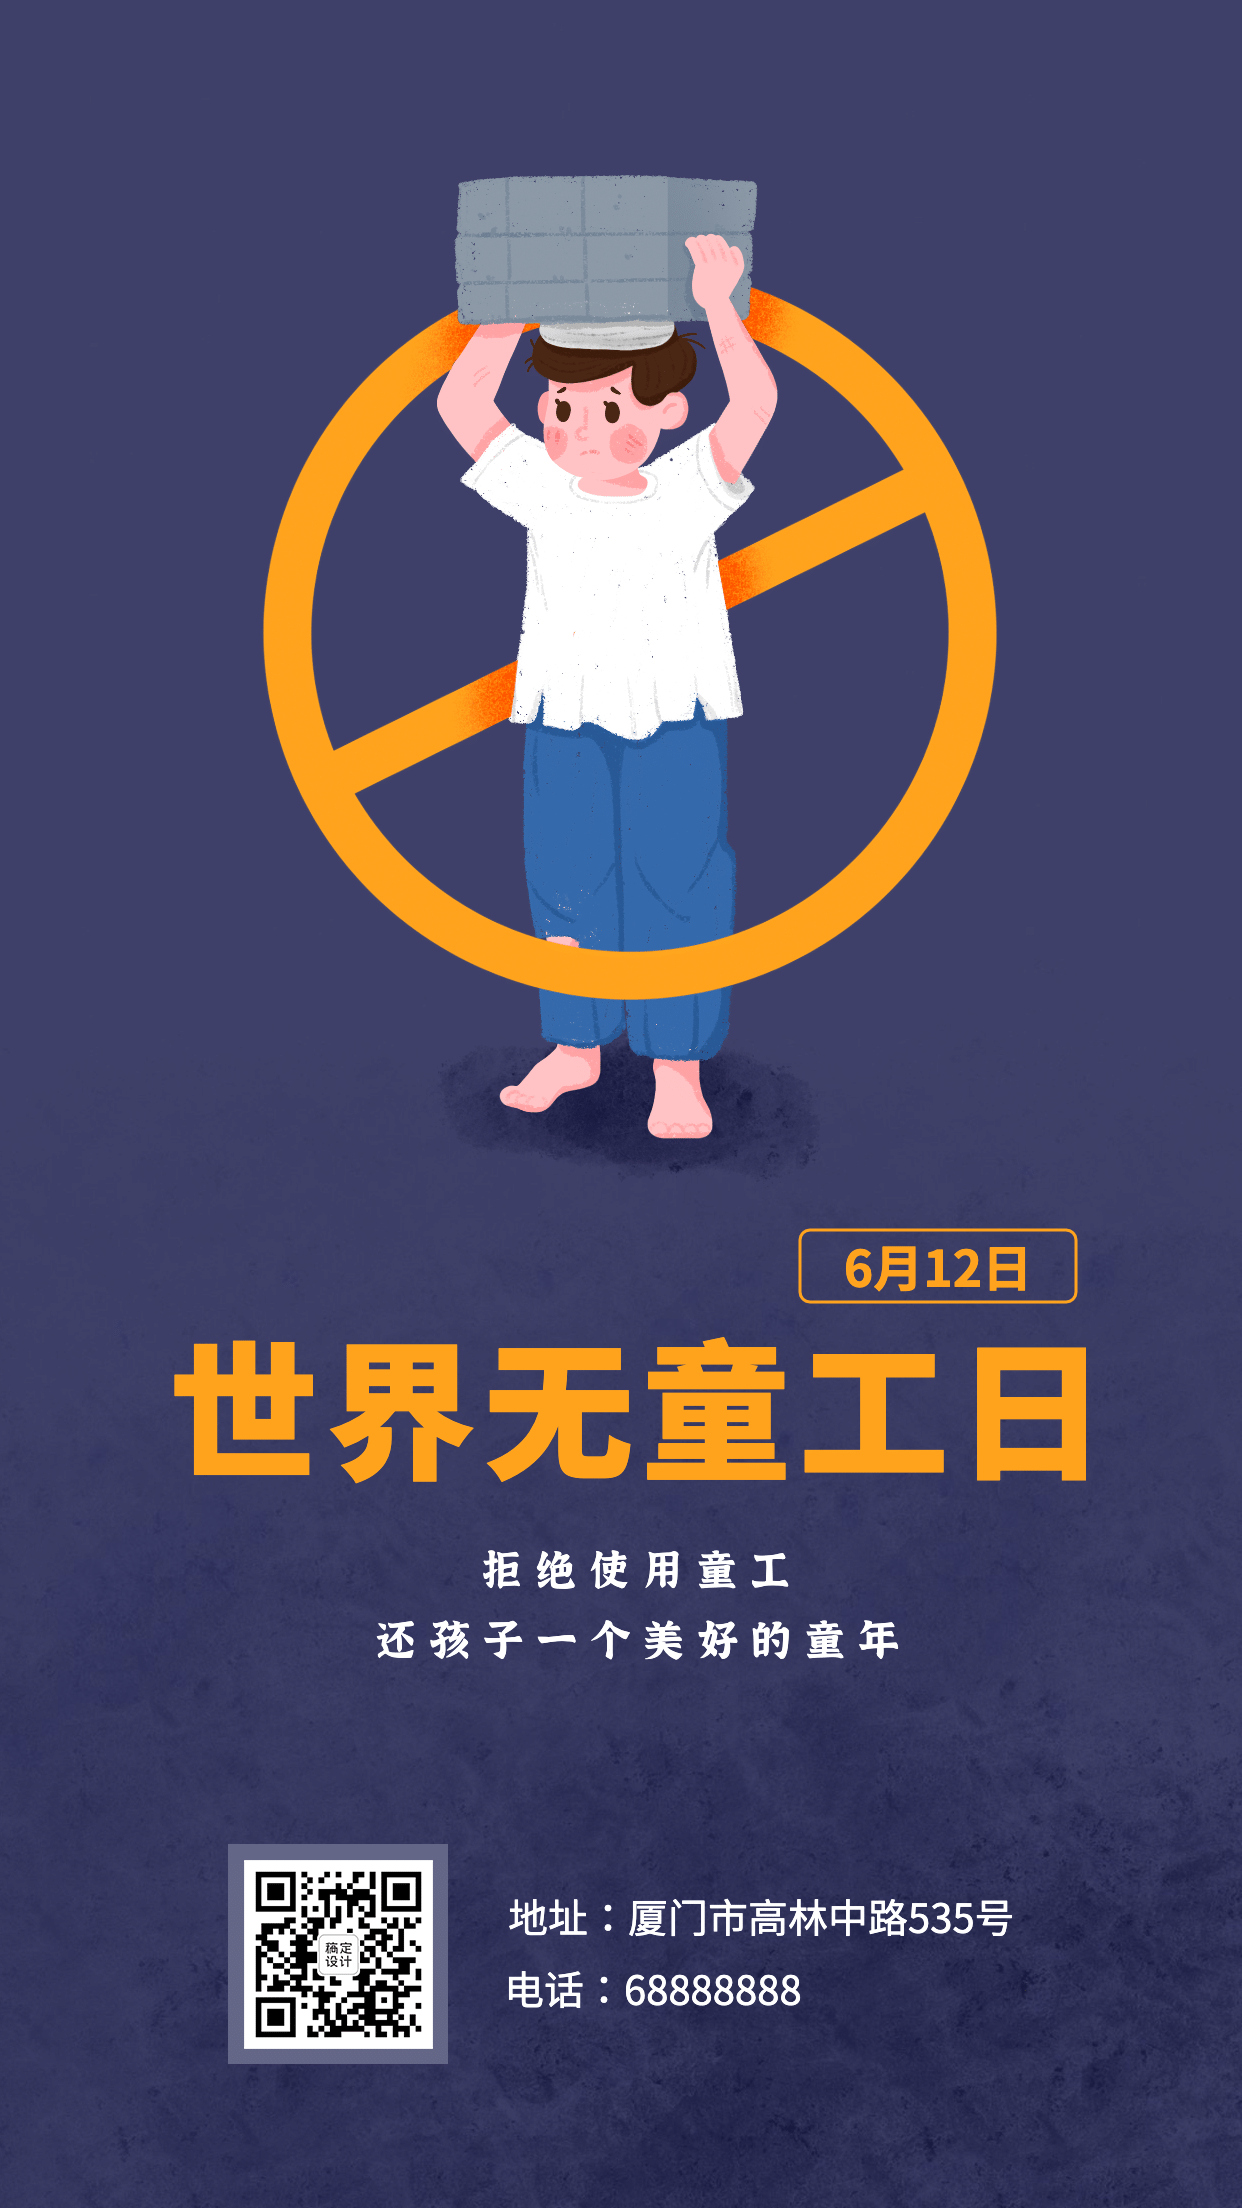 612世界无童工日公益宣传手绘手机海报